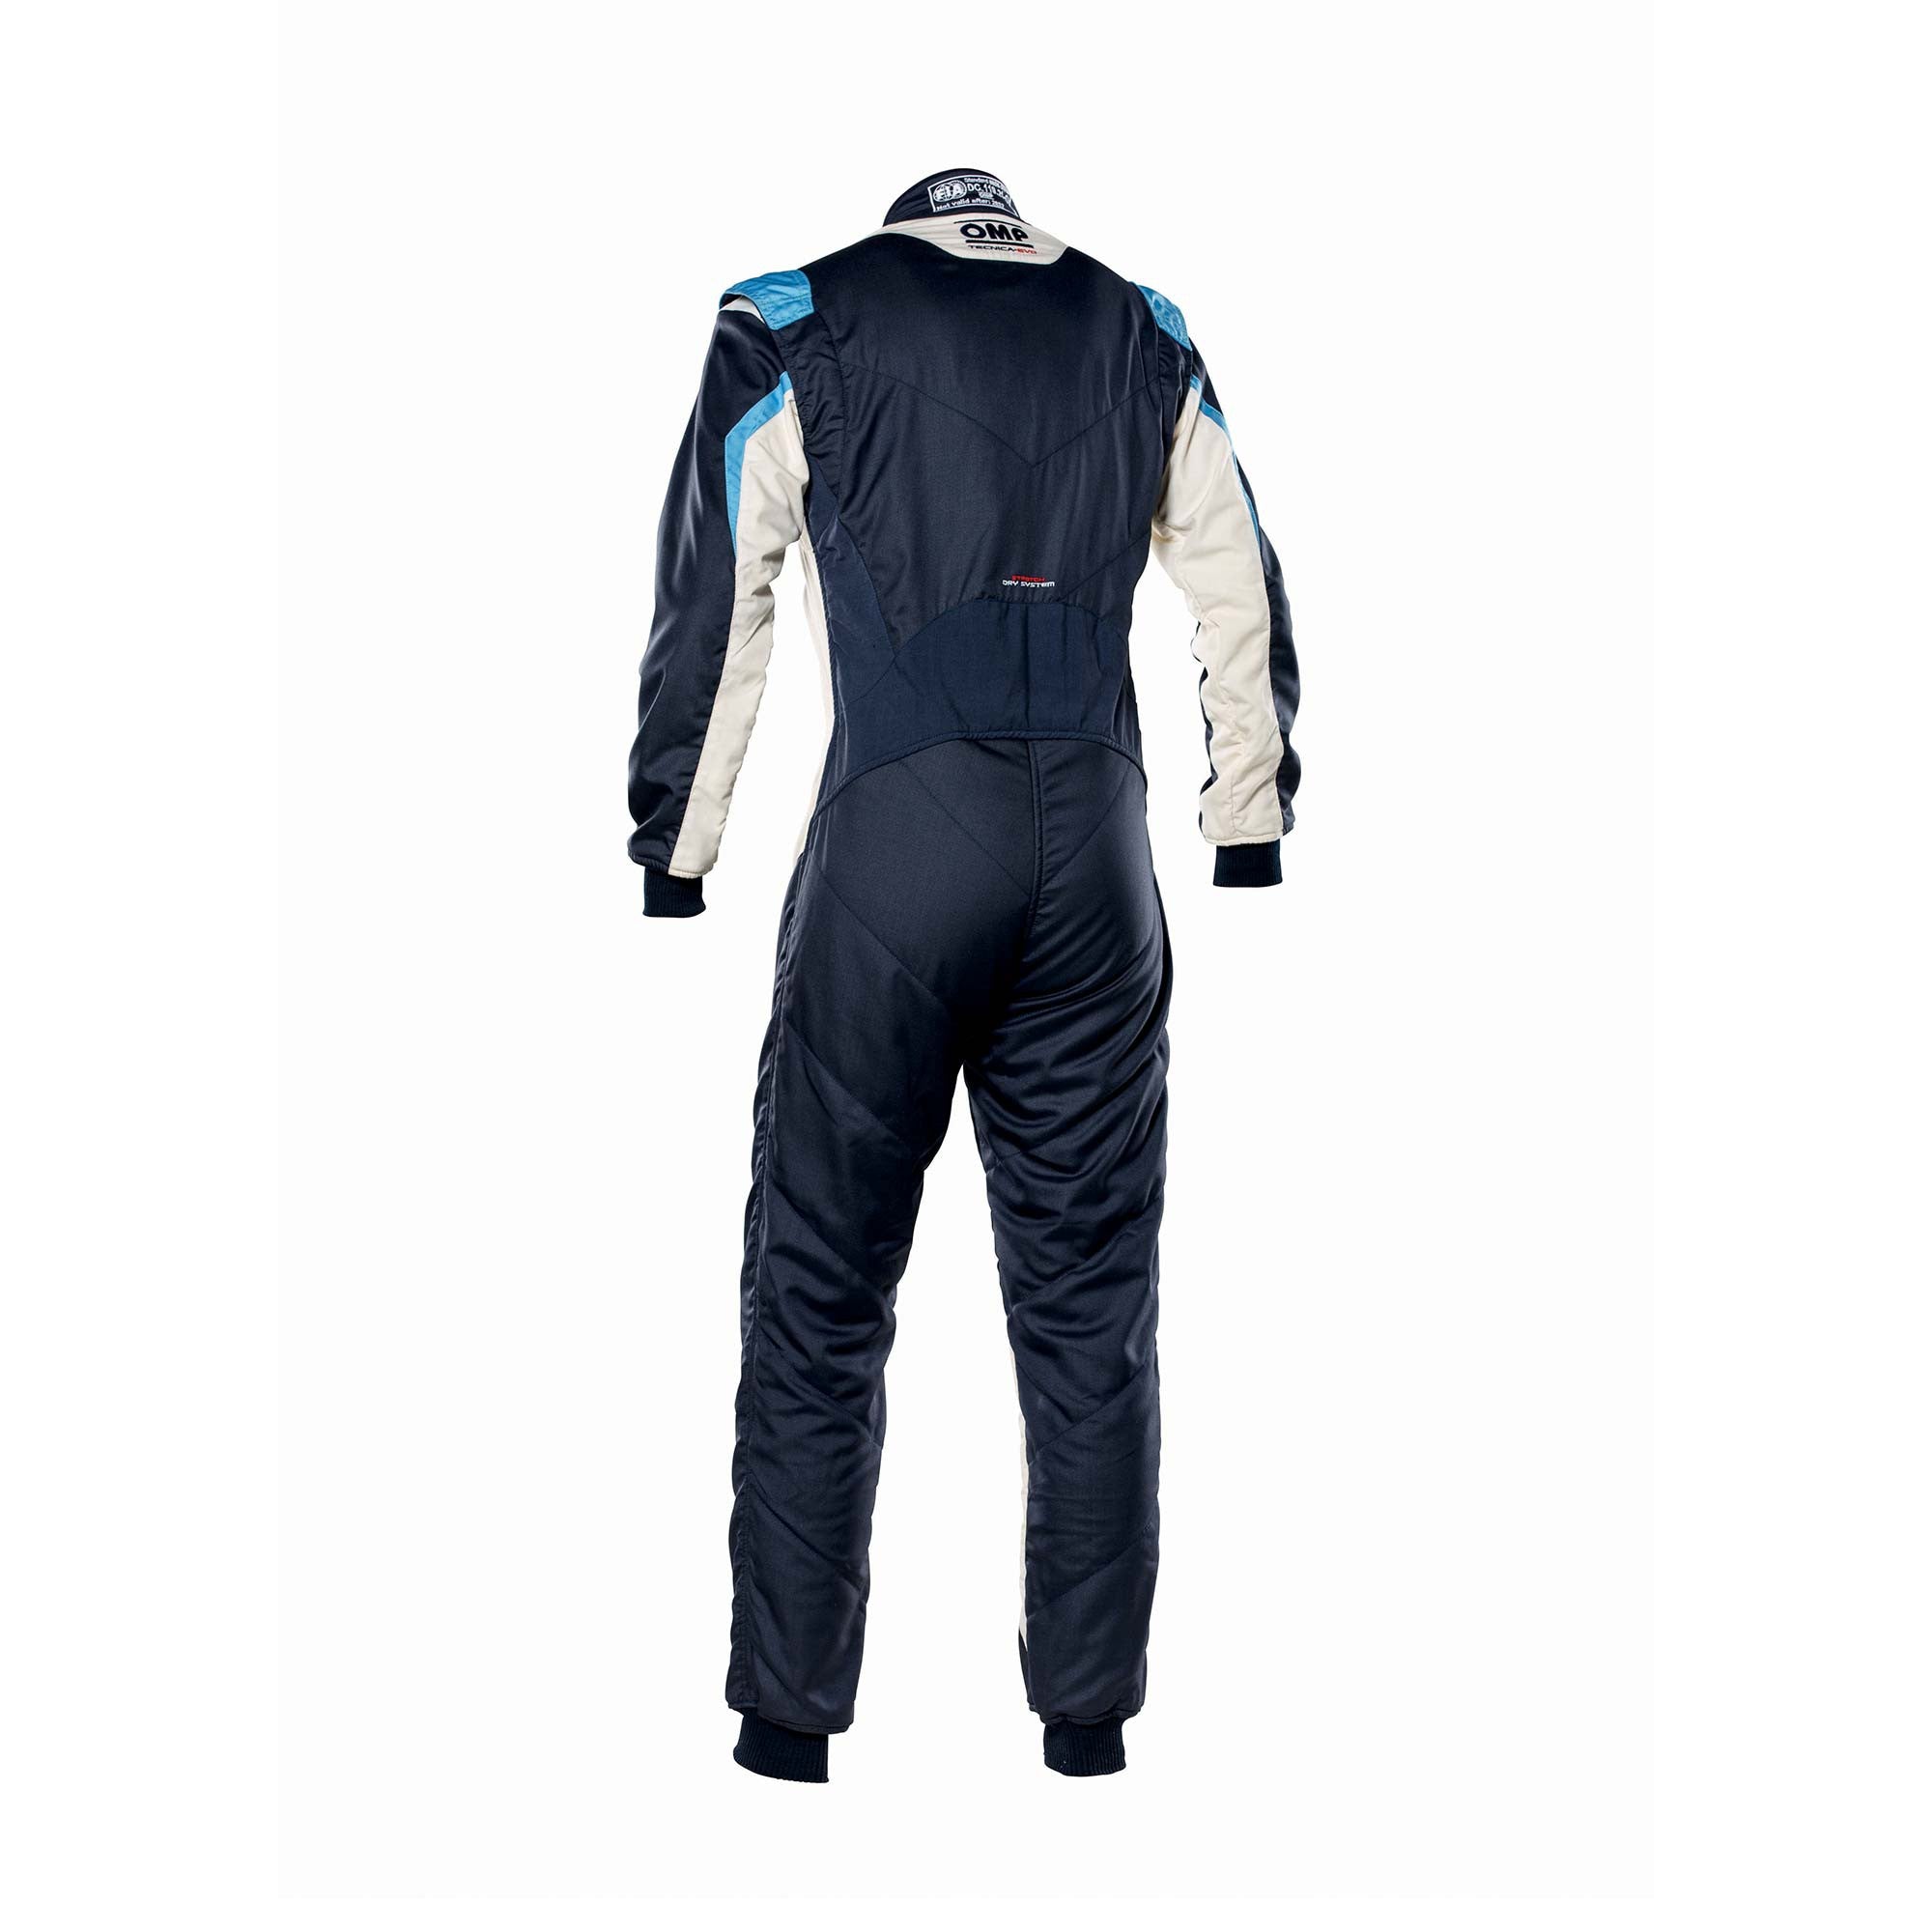 OMP IA0-1859-B01-246-46 Racing suit TECNICA EVO MY2021, FIA 8856-2018, navy blue/white/grey/cyan, size 46 Photo-1 